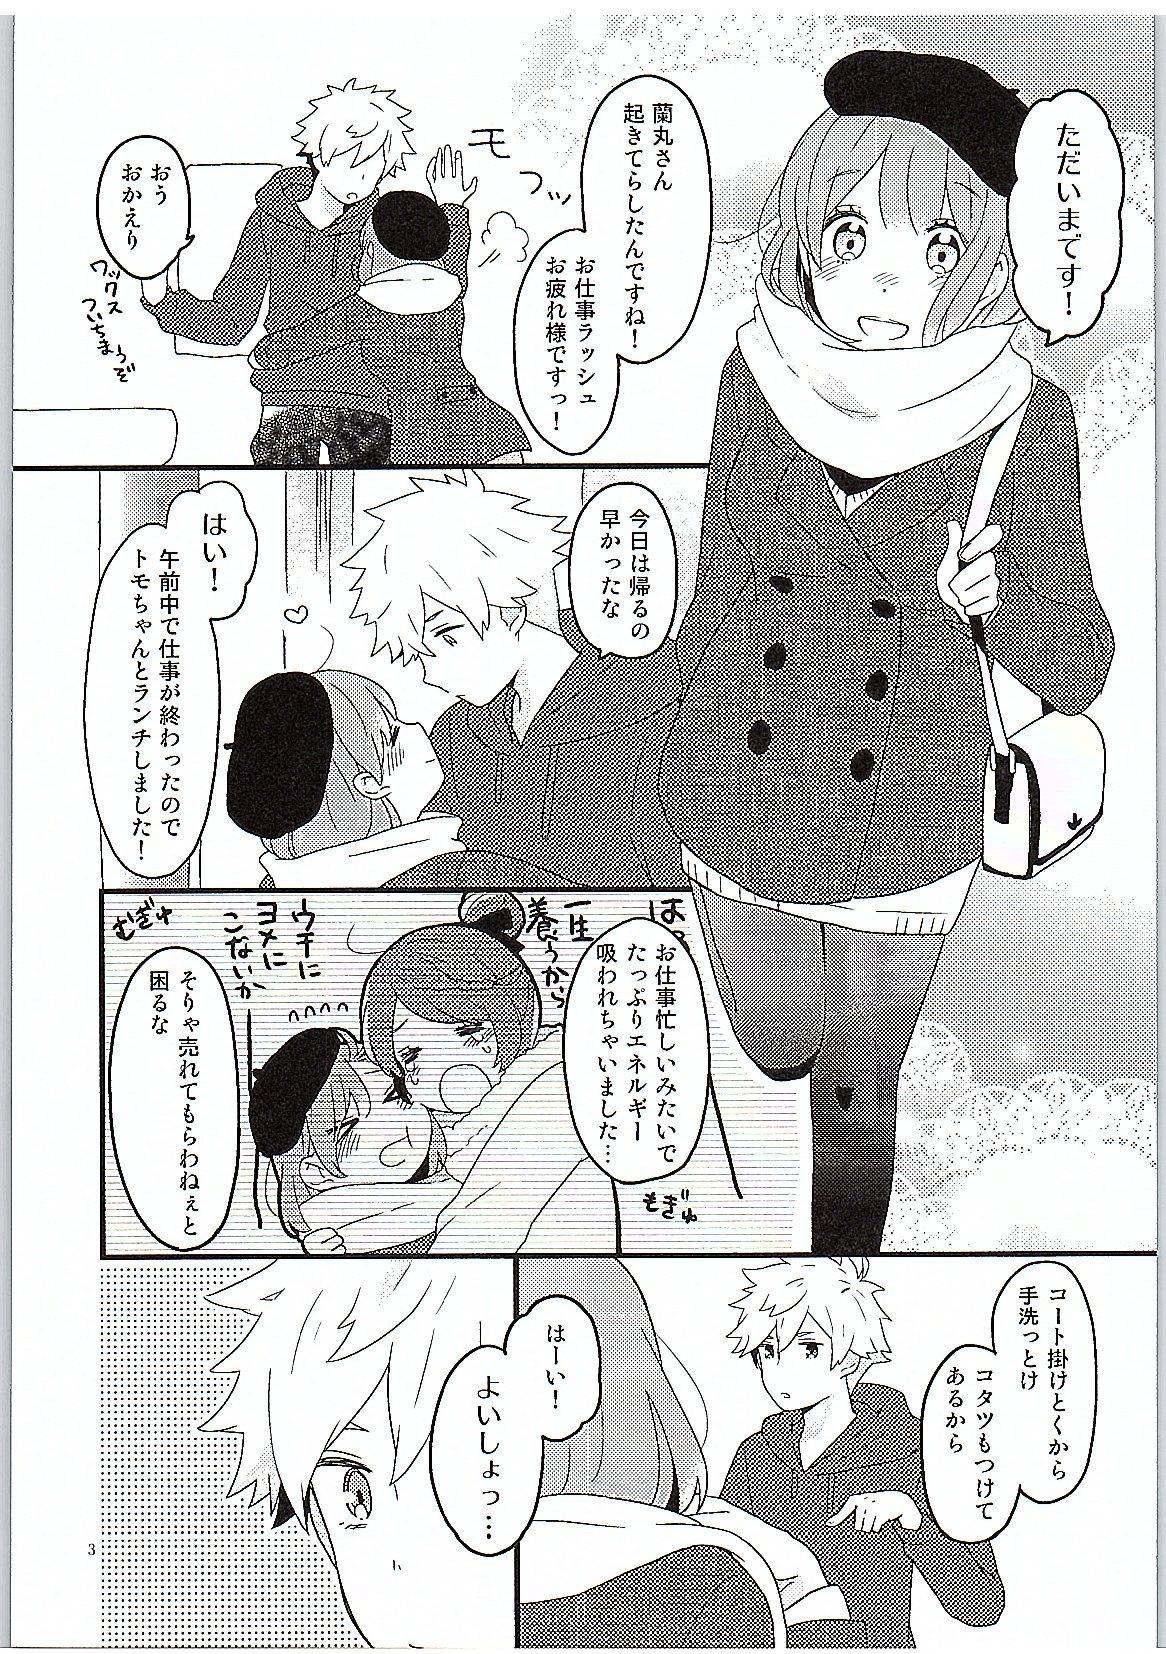 Tugging Yasashii Ito - Uta no prince-sama Sextoys - Page 4